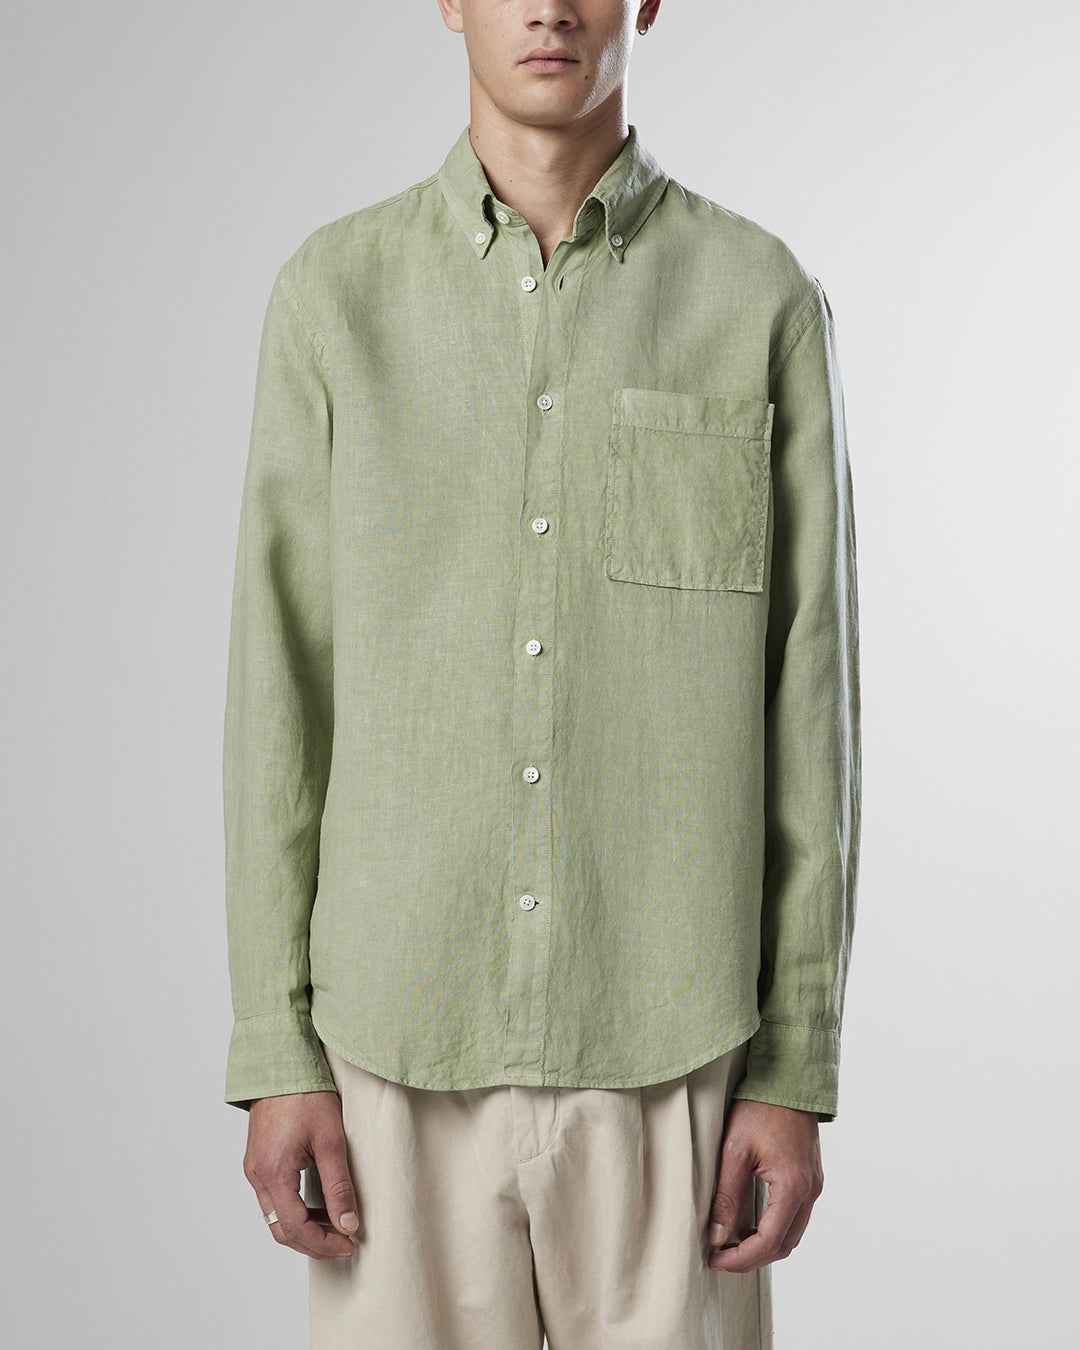 NN07 - Arne BD 5706 Linen Shirt in Pale Green | Buster McGee